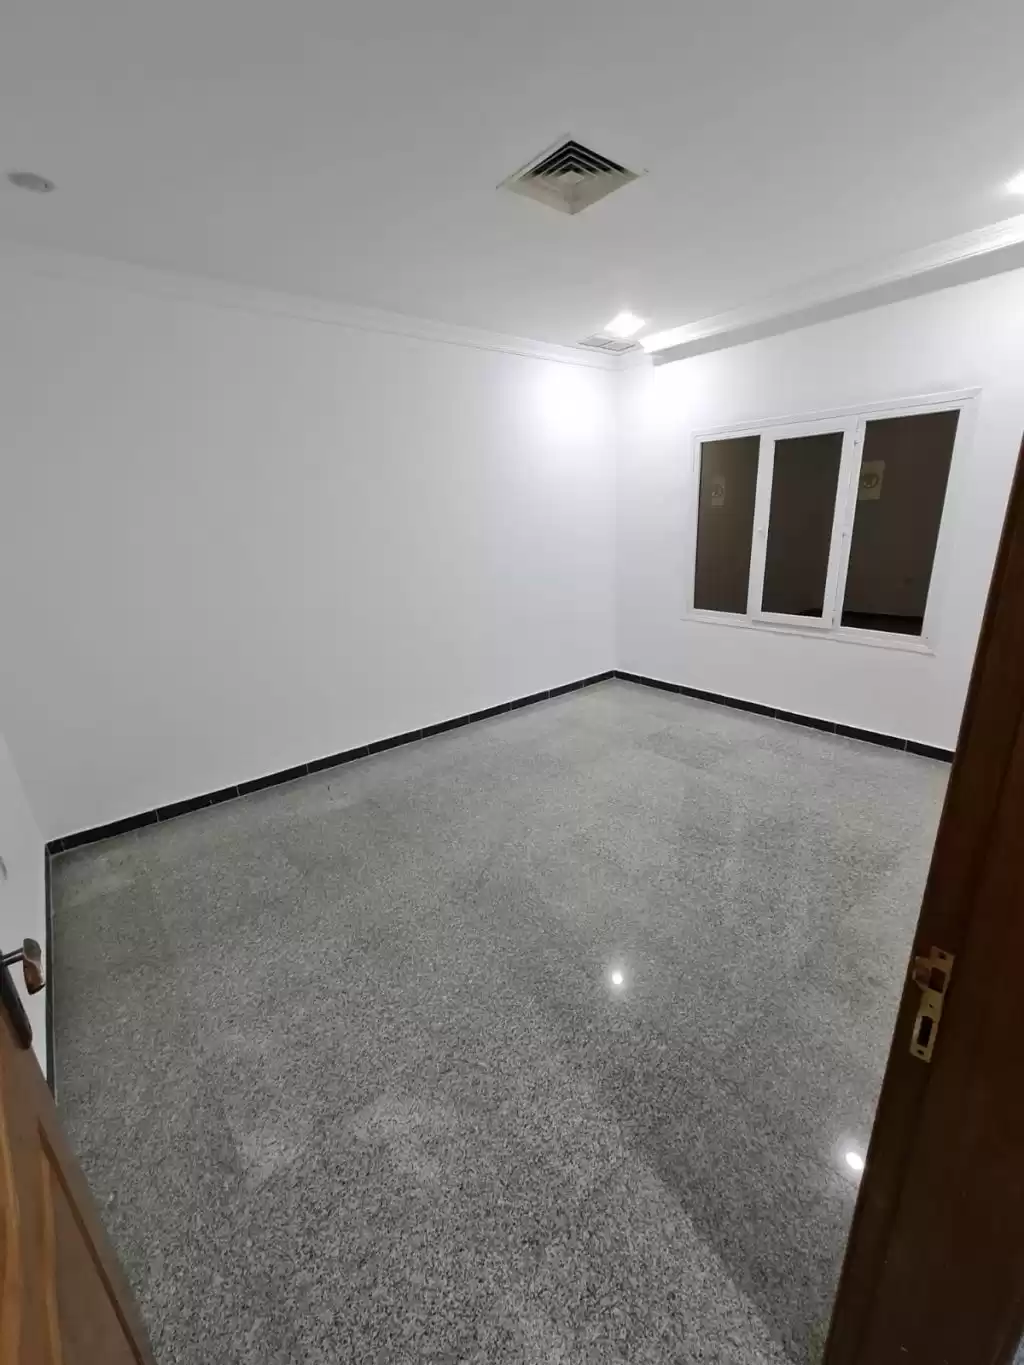 Résidentiel Propriété prête 3 chambres U / f Appartement  a louer au Koweit #22951 - 1  image 